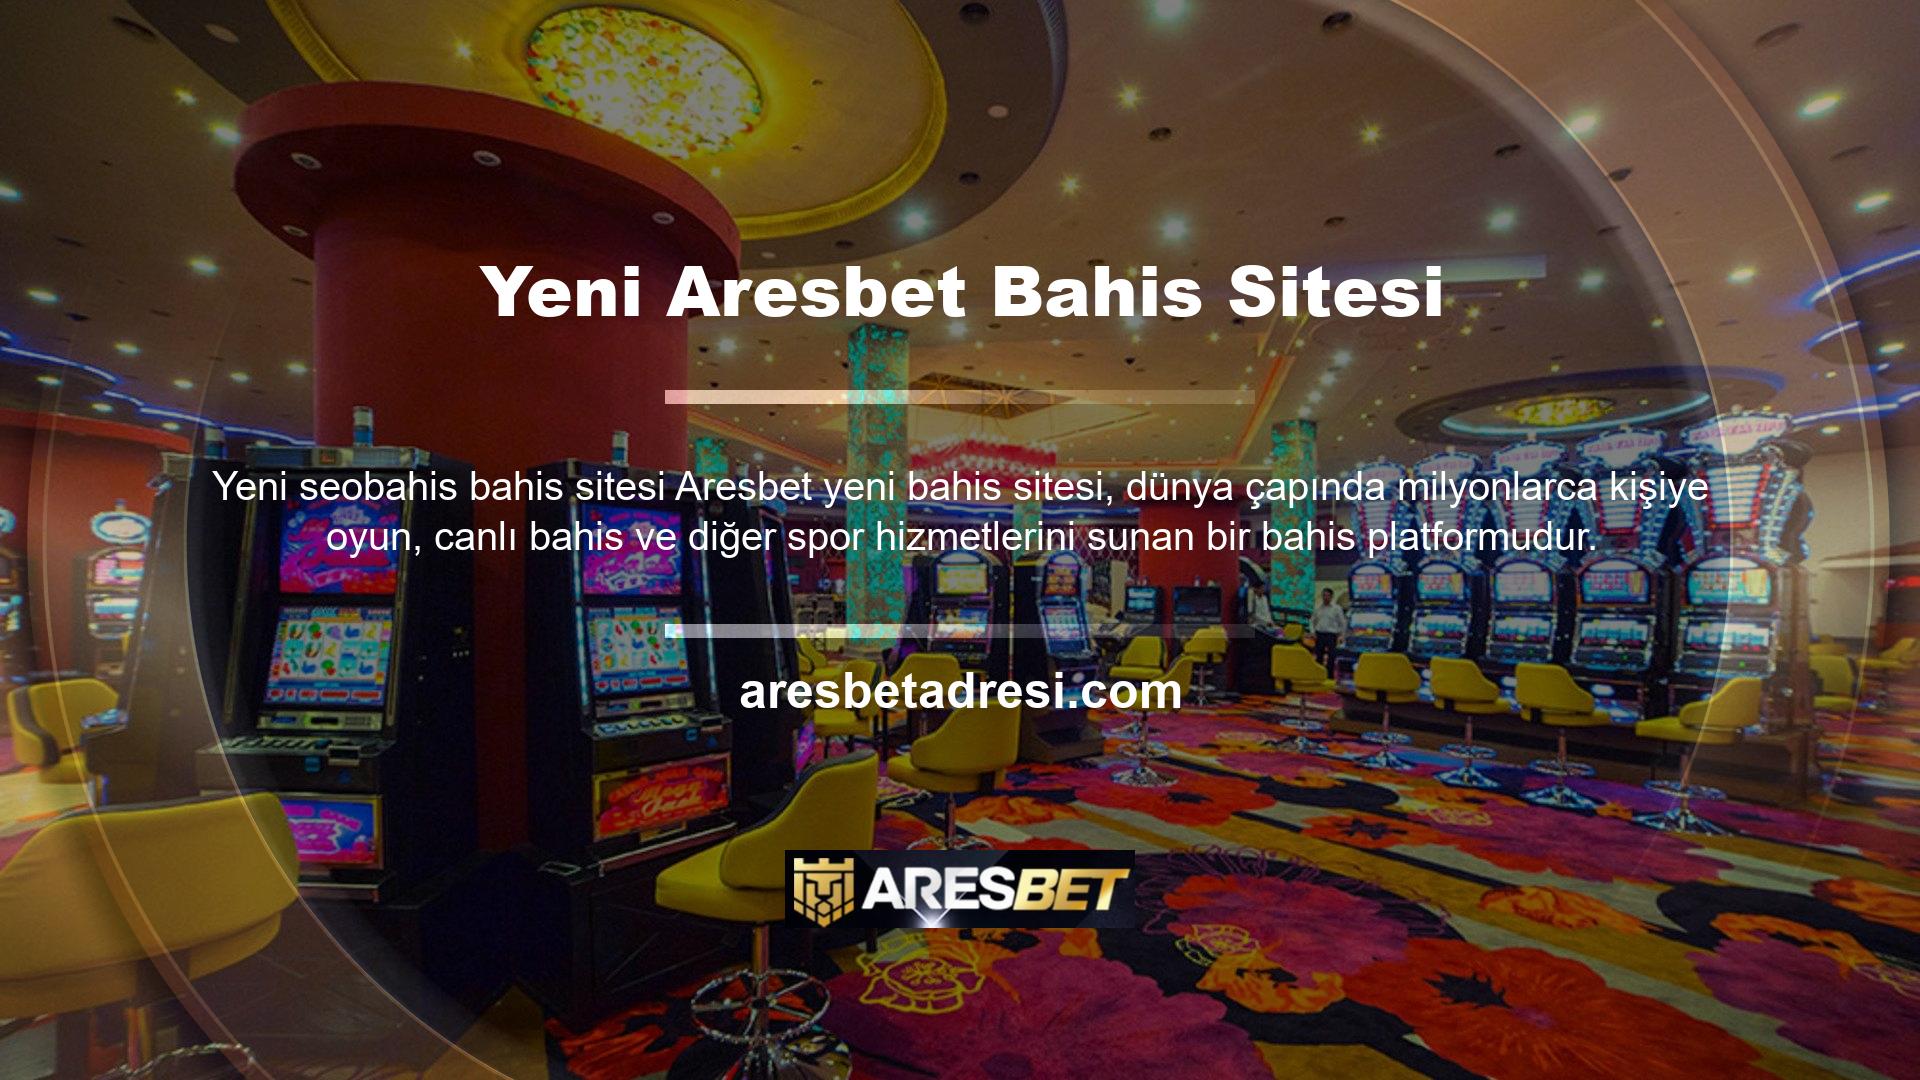 Aresbet, oyuncular için en güvenilir ve popüler bahis sitelerinden biridir